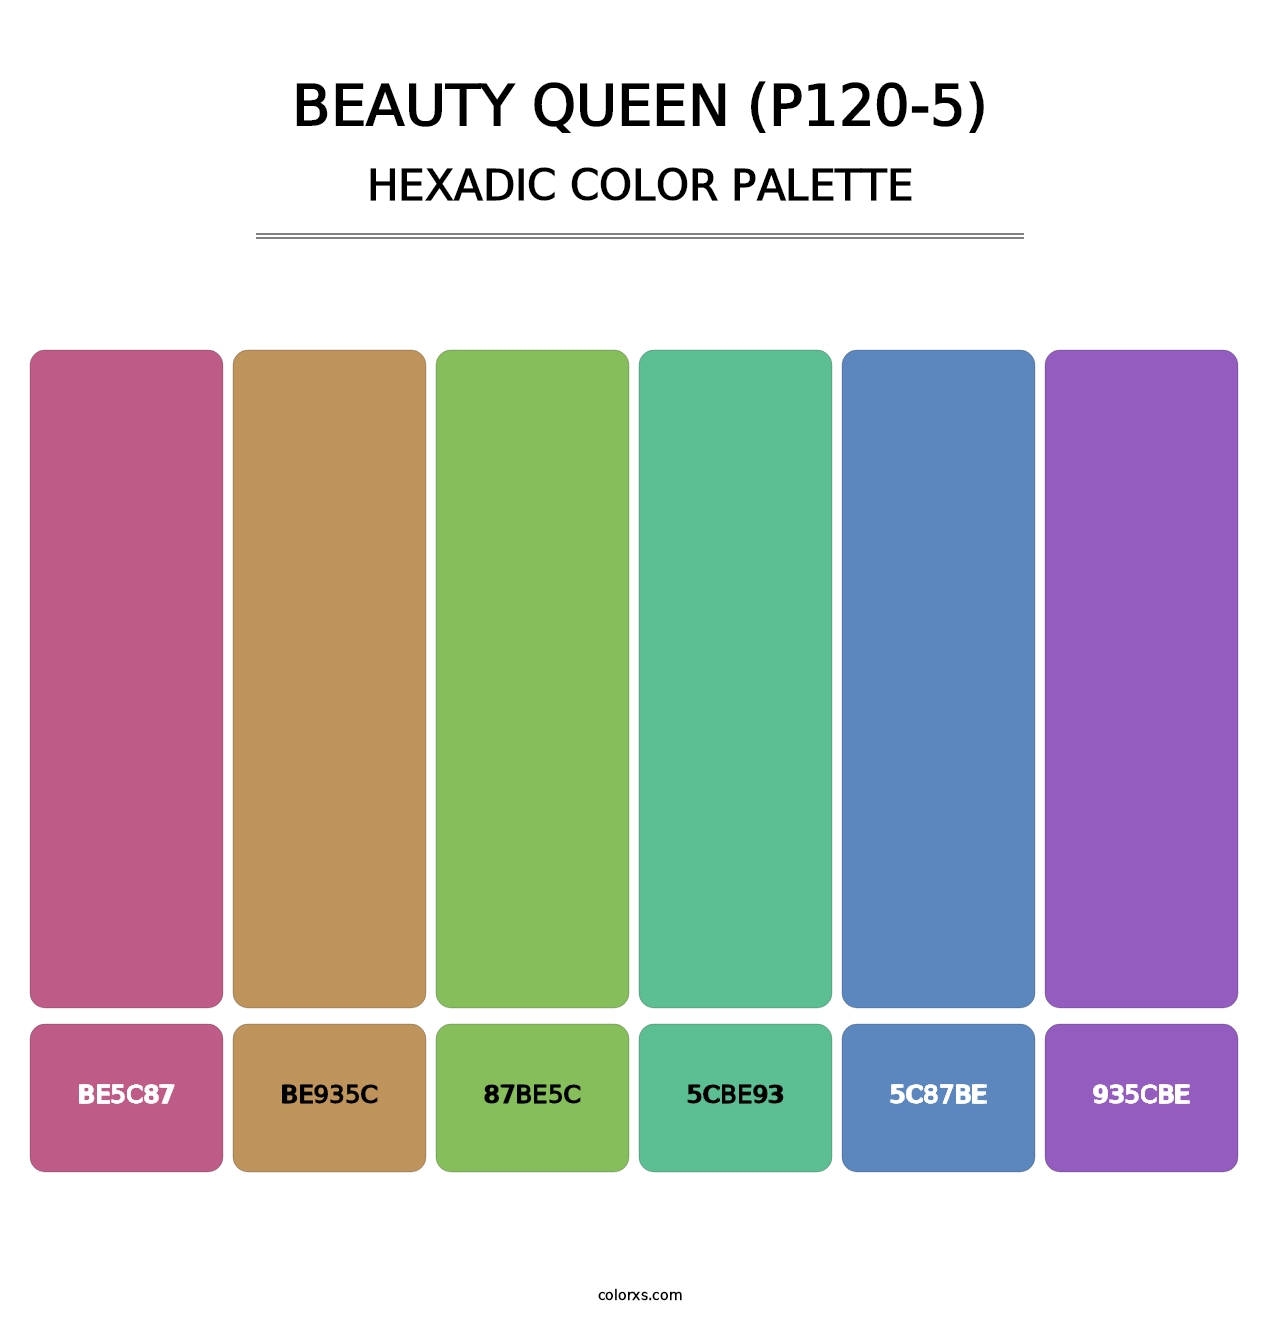 Beauty Queen (P120-5) - Hexadic Color Palette